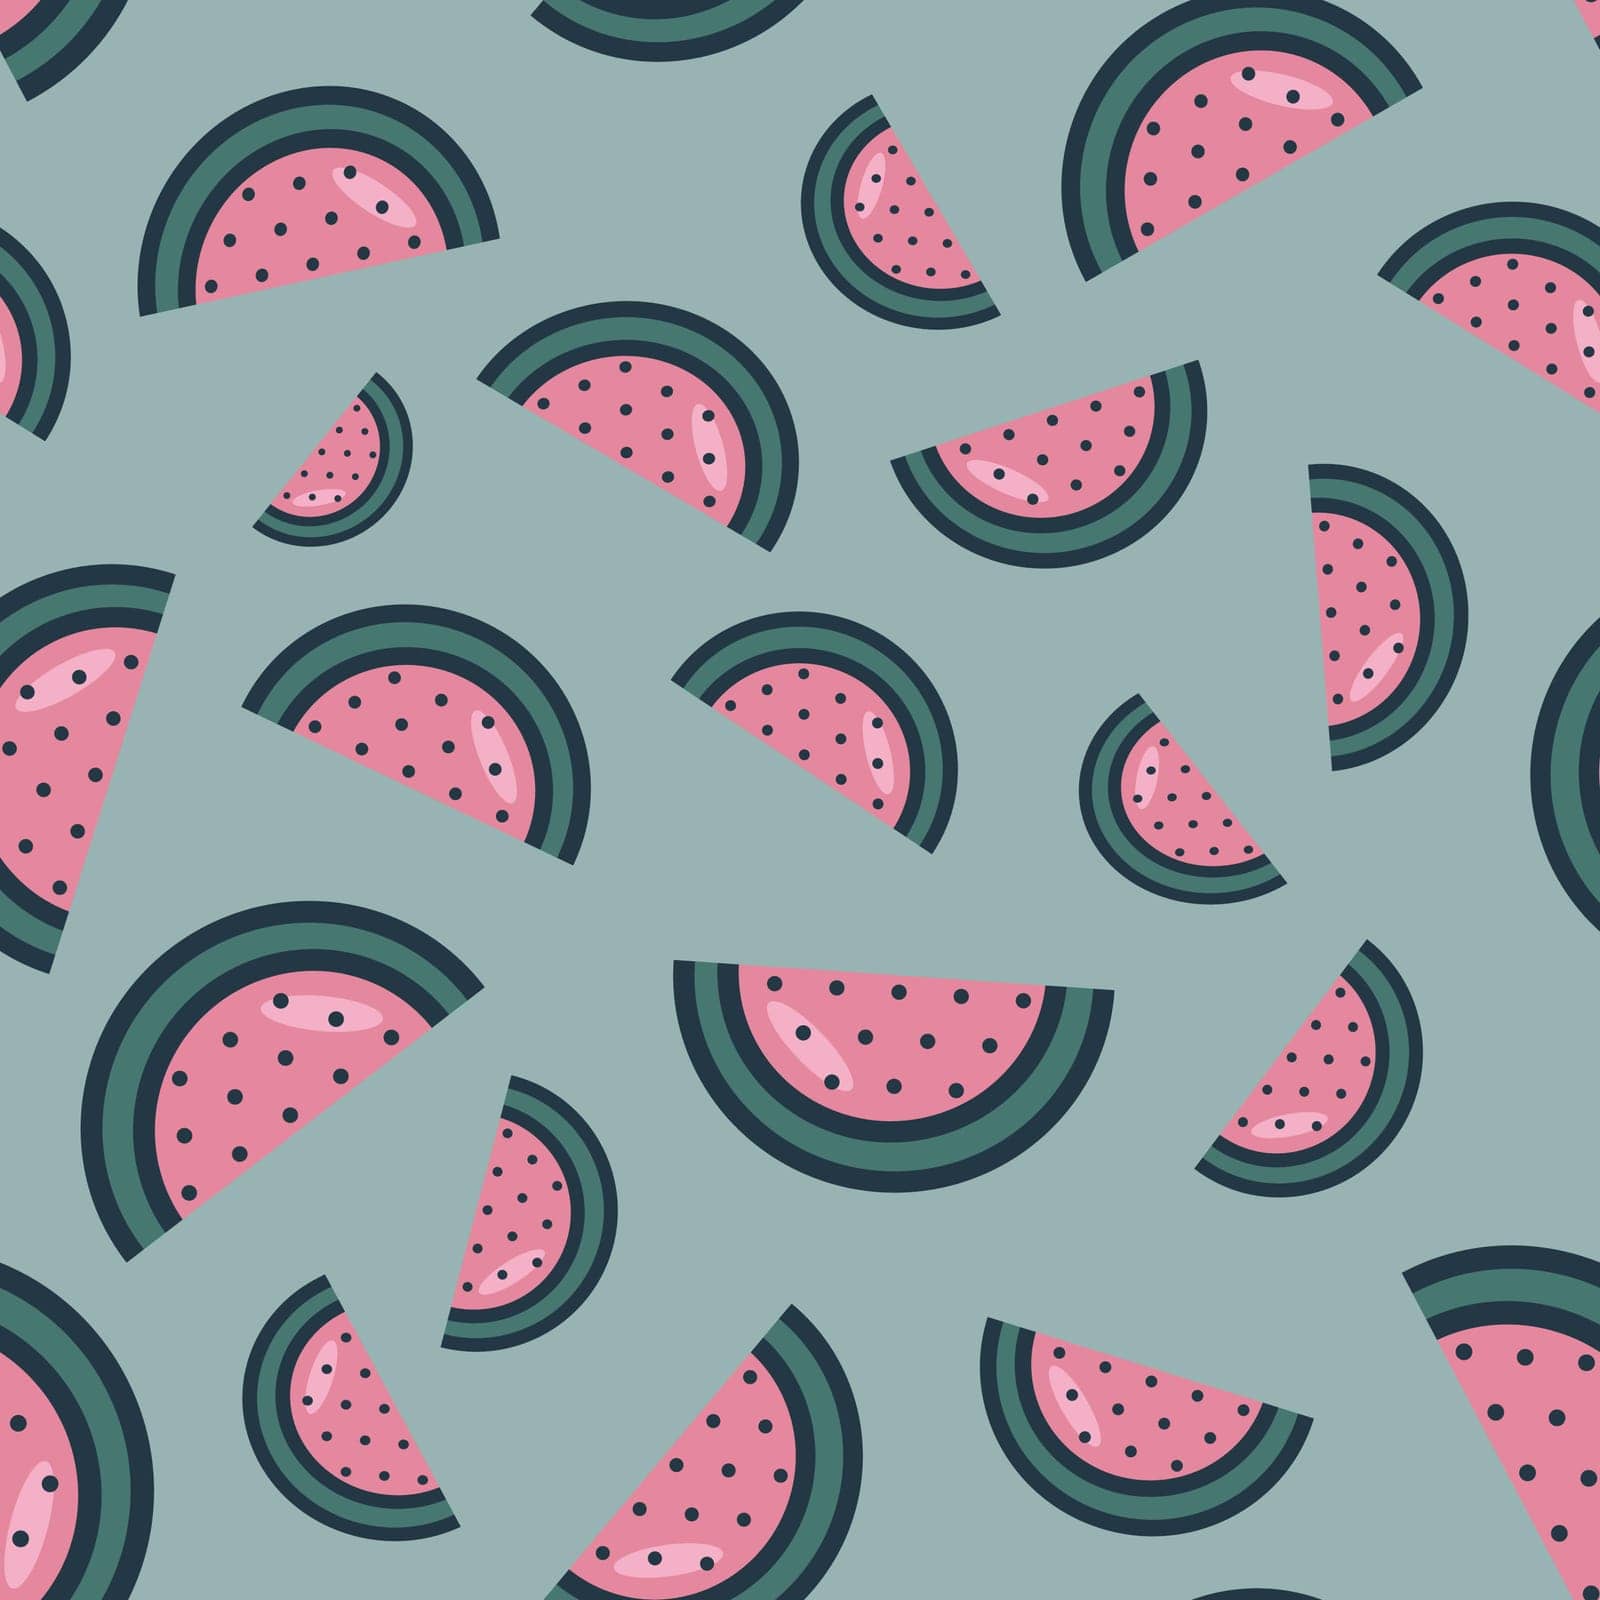 pattern of watermelon. Simple watermelon pattern by Dustick